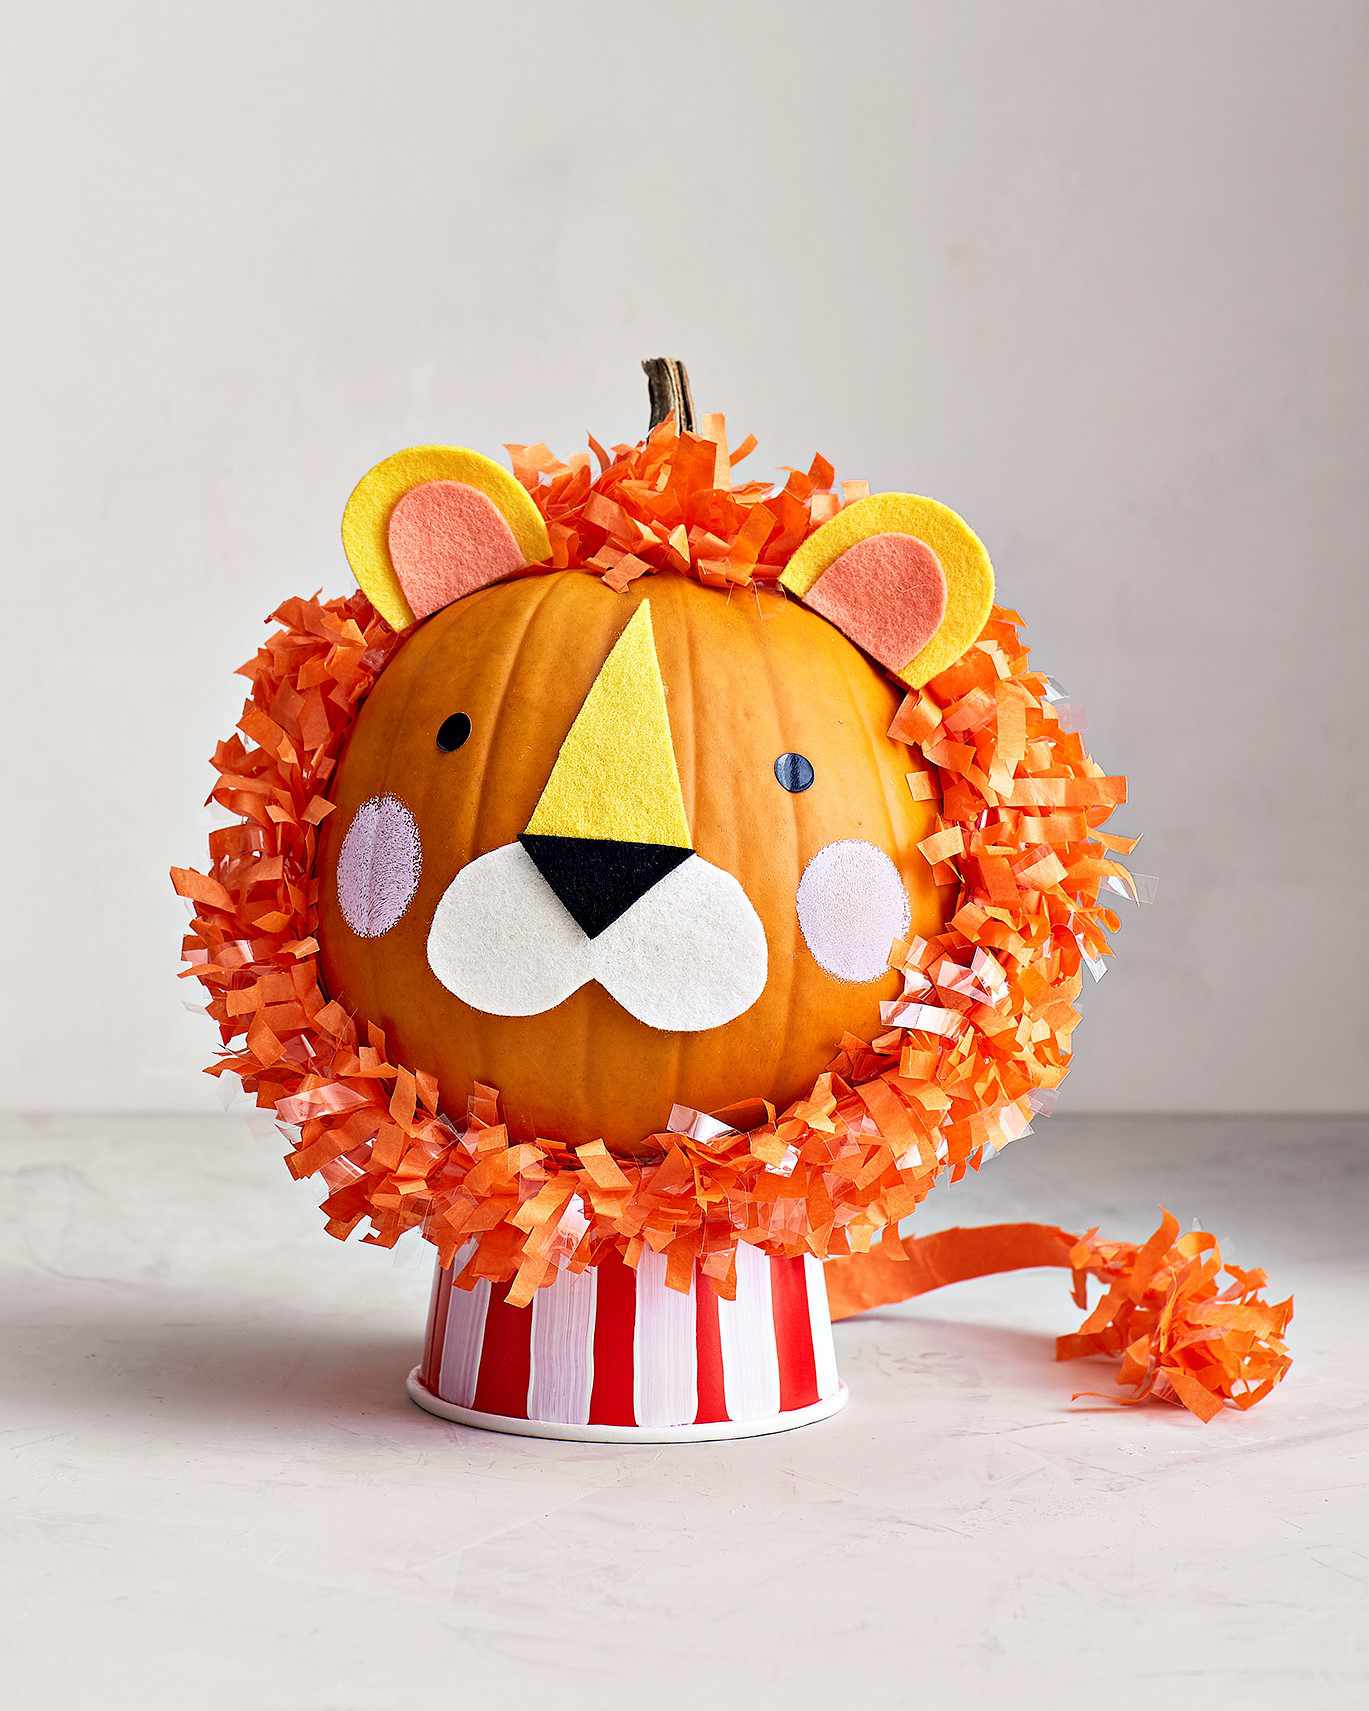 Easy No-Carve Pumpkin Decorating Ideas for Kids | Parents